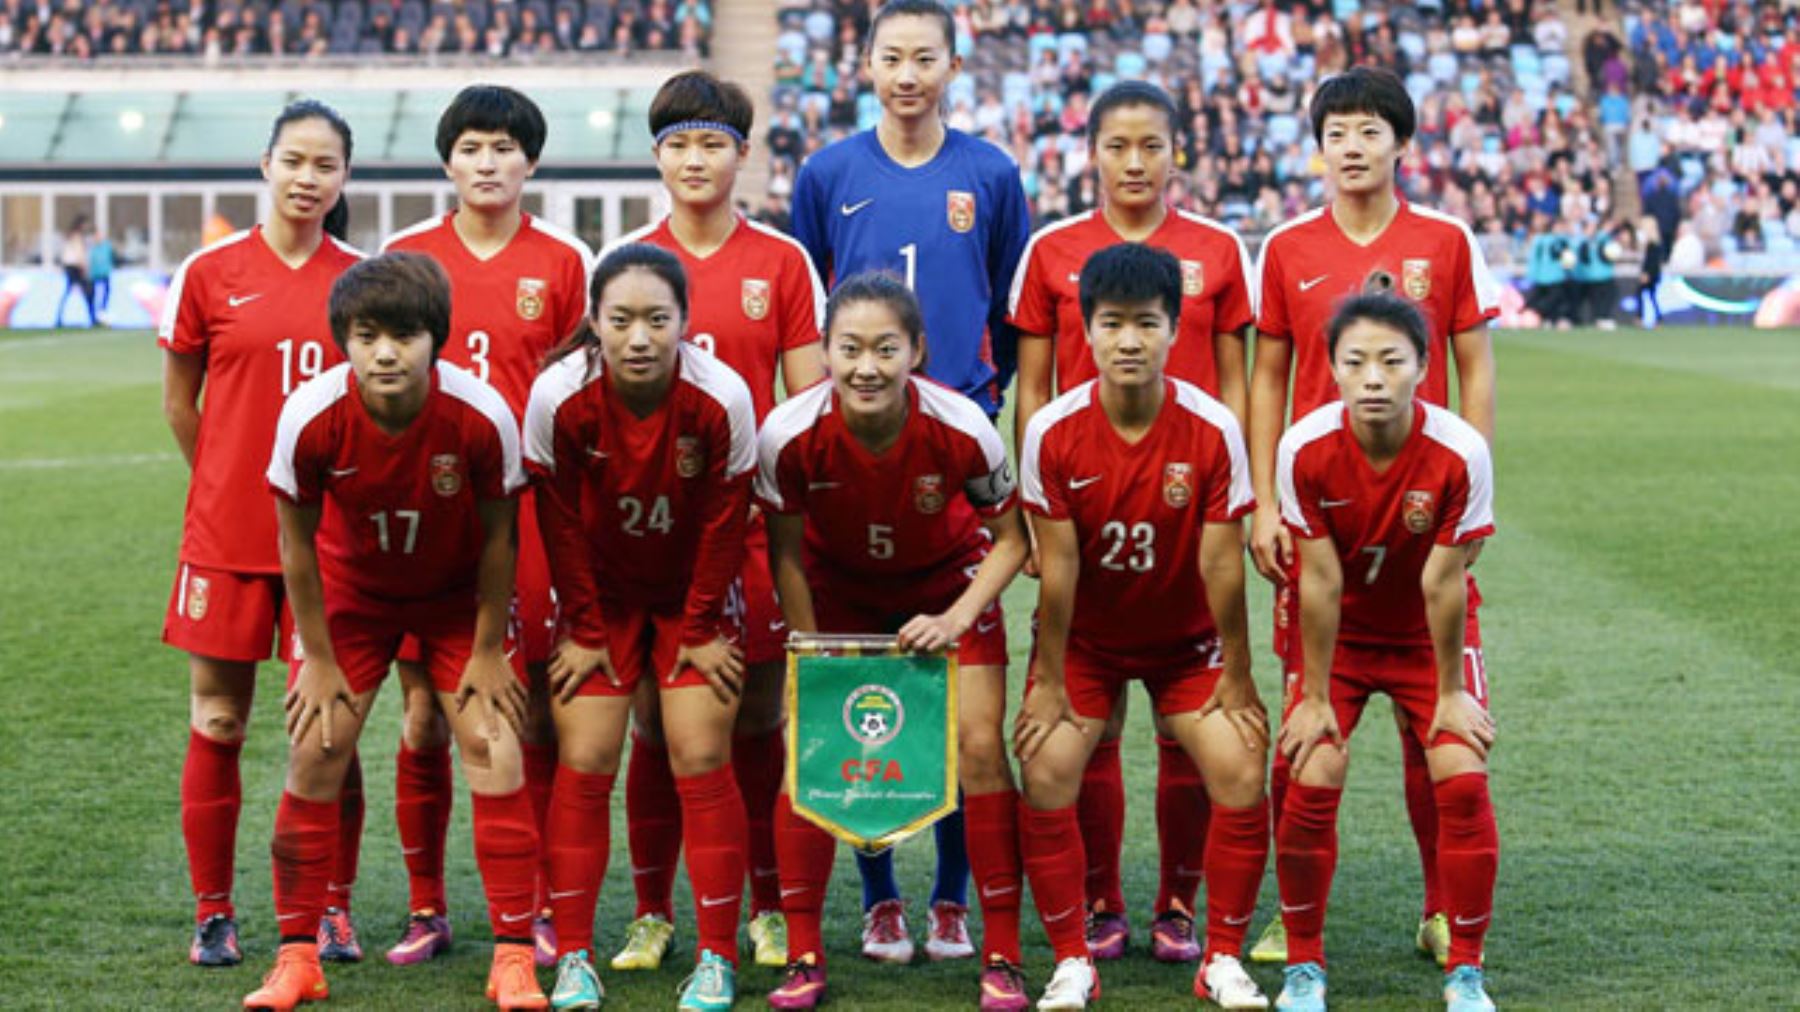 La selección femenina china de fútbol fue colocada en cuarentena en un hotel de Brisbane a su llegada a Australia para un partido de las eliminatorias de los Juegos Olímpicos